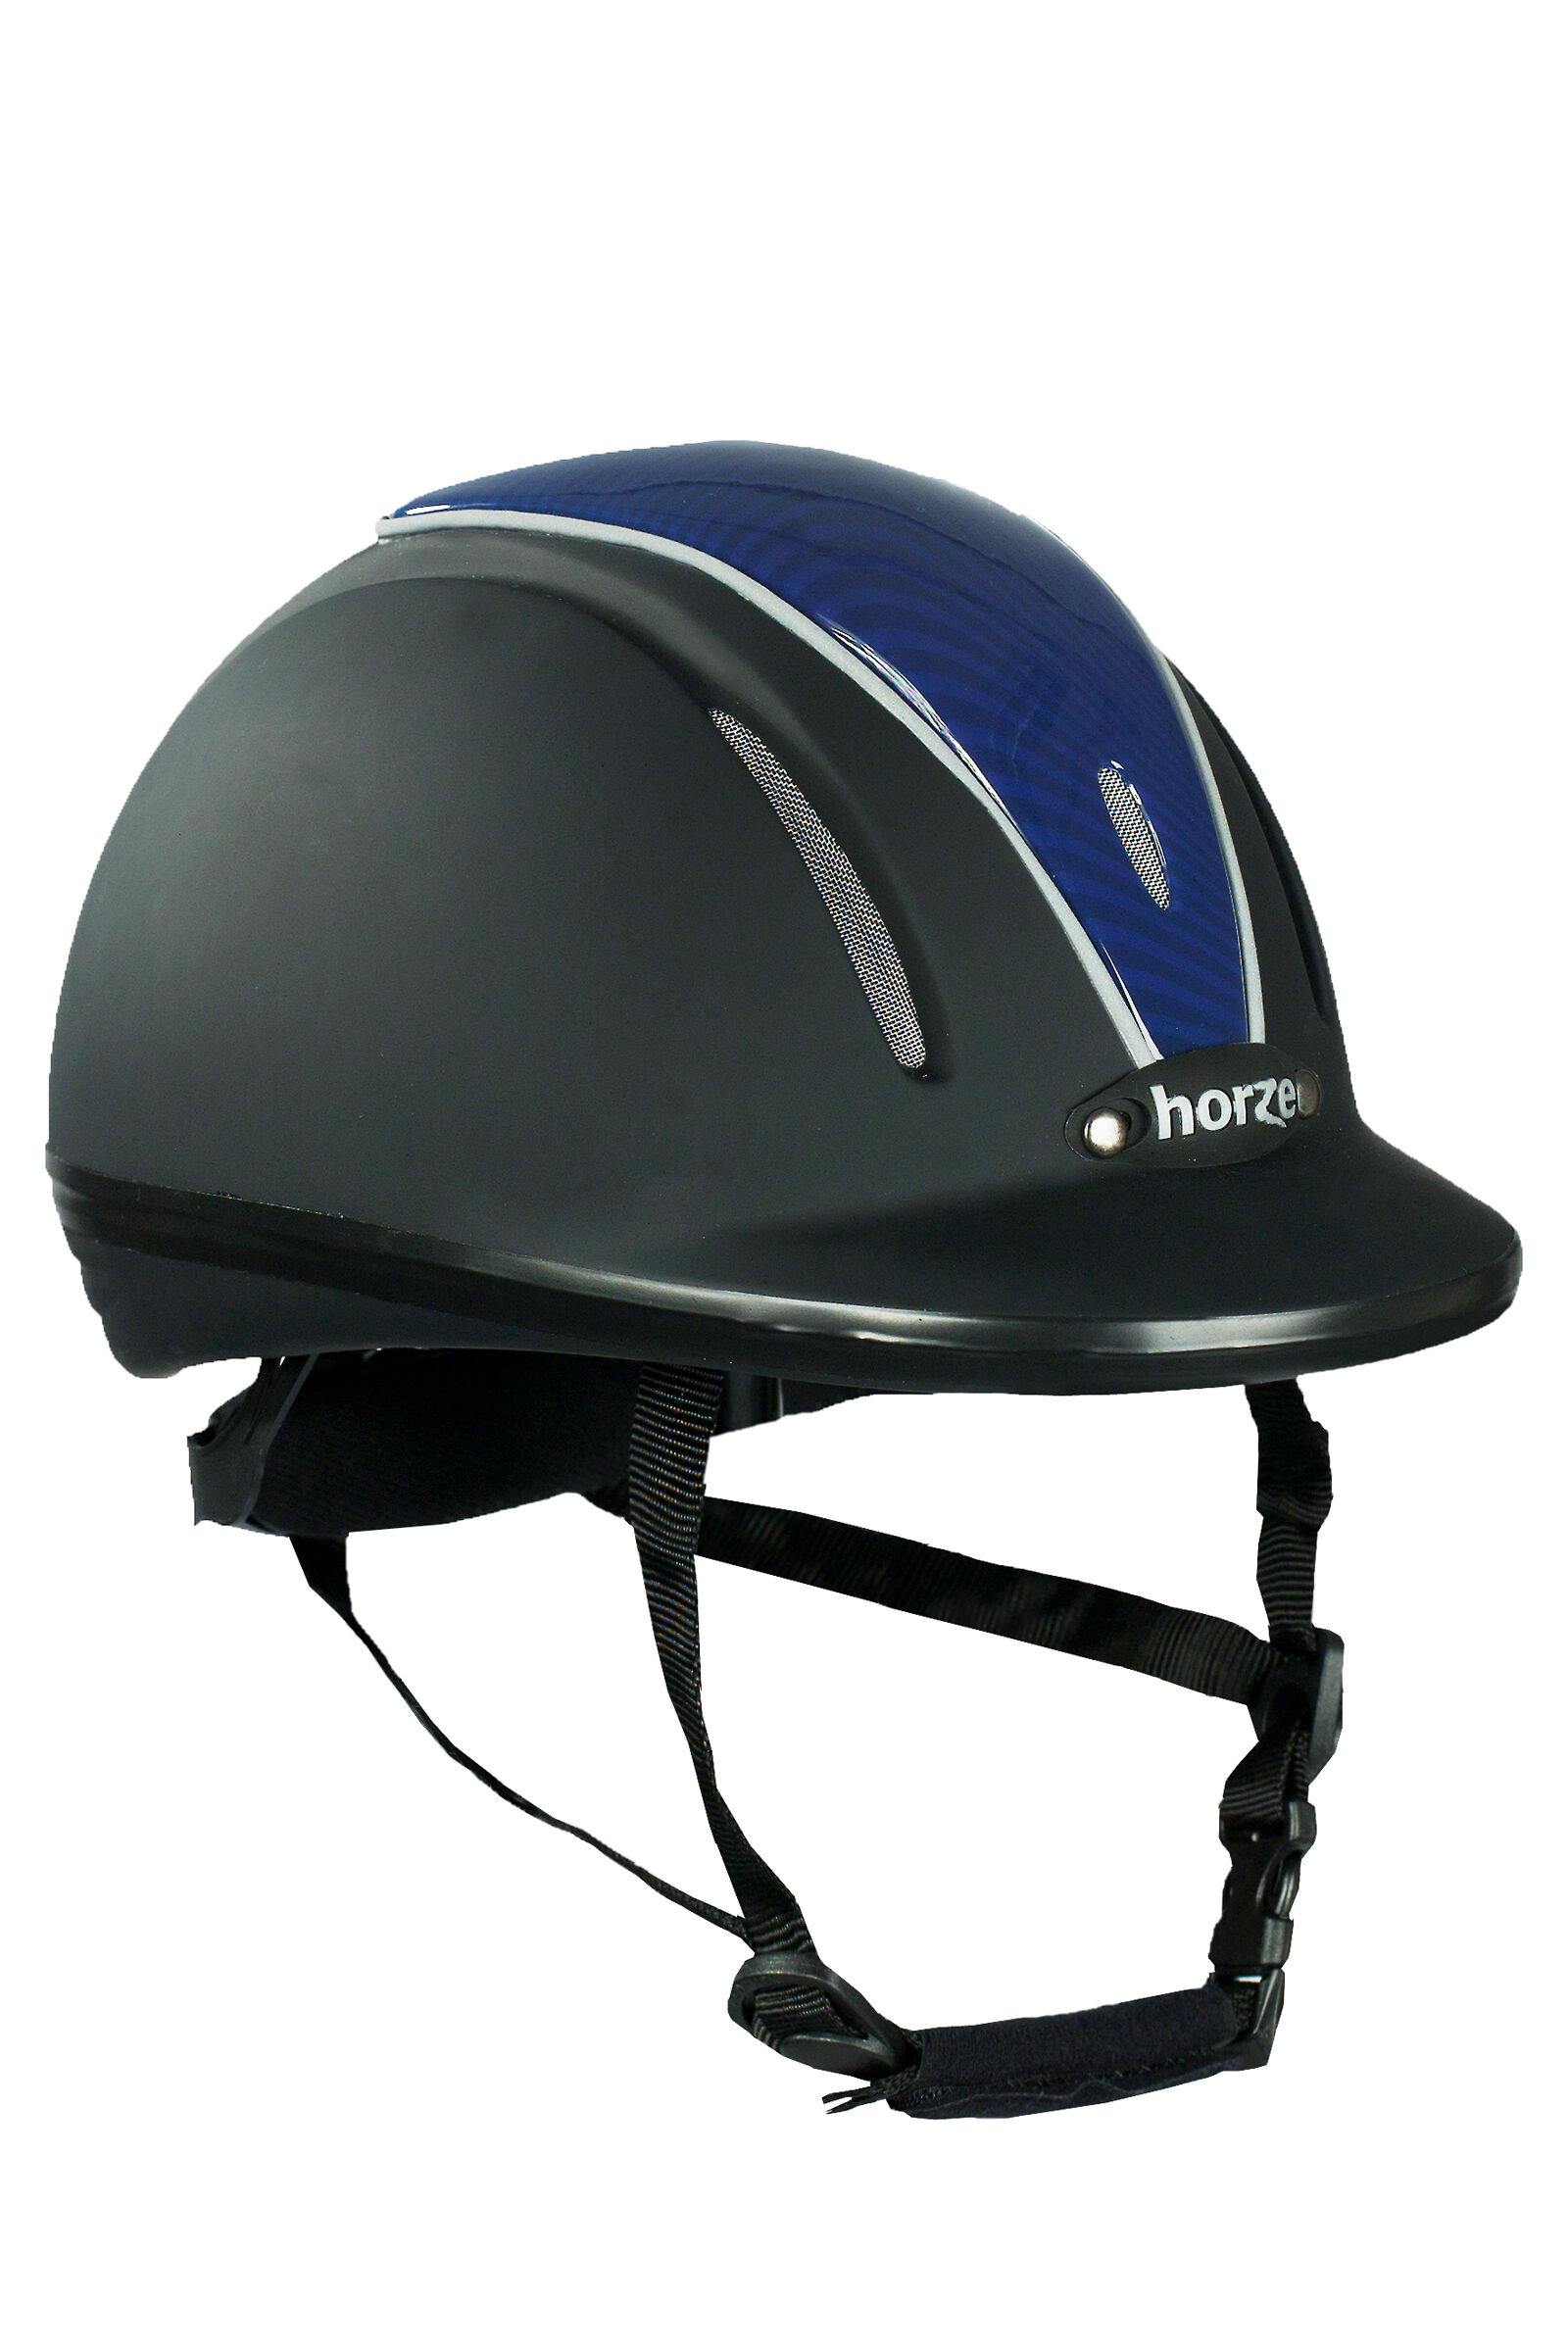 Horze Pacific Defenze Adjustable Riding Helmet